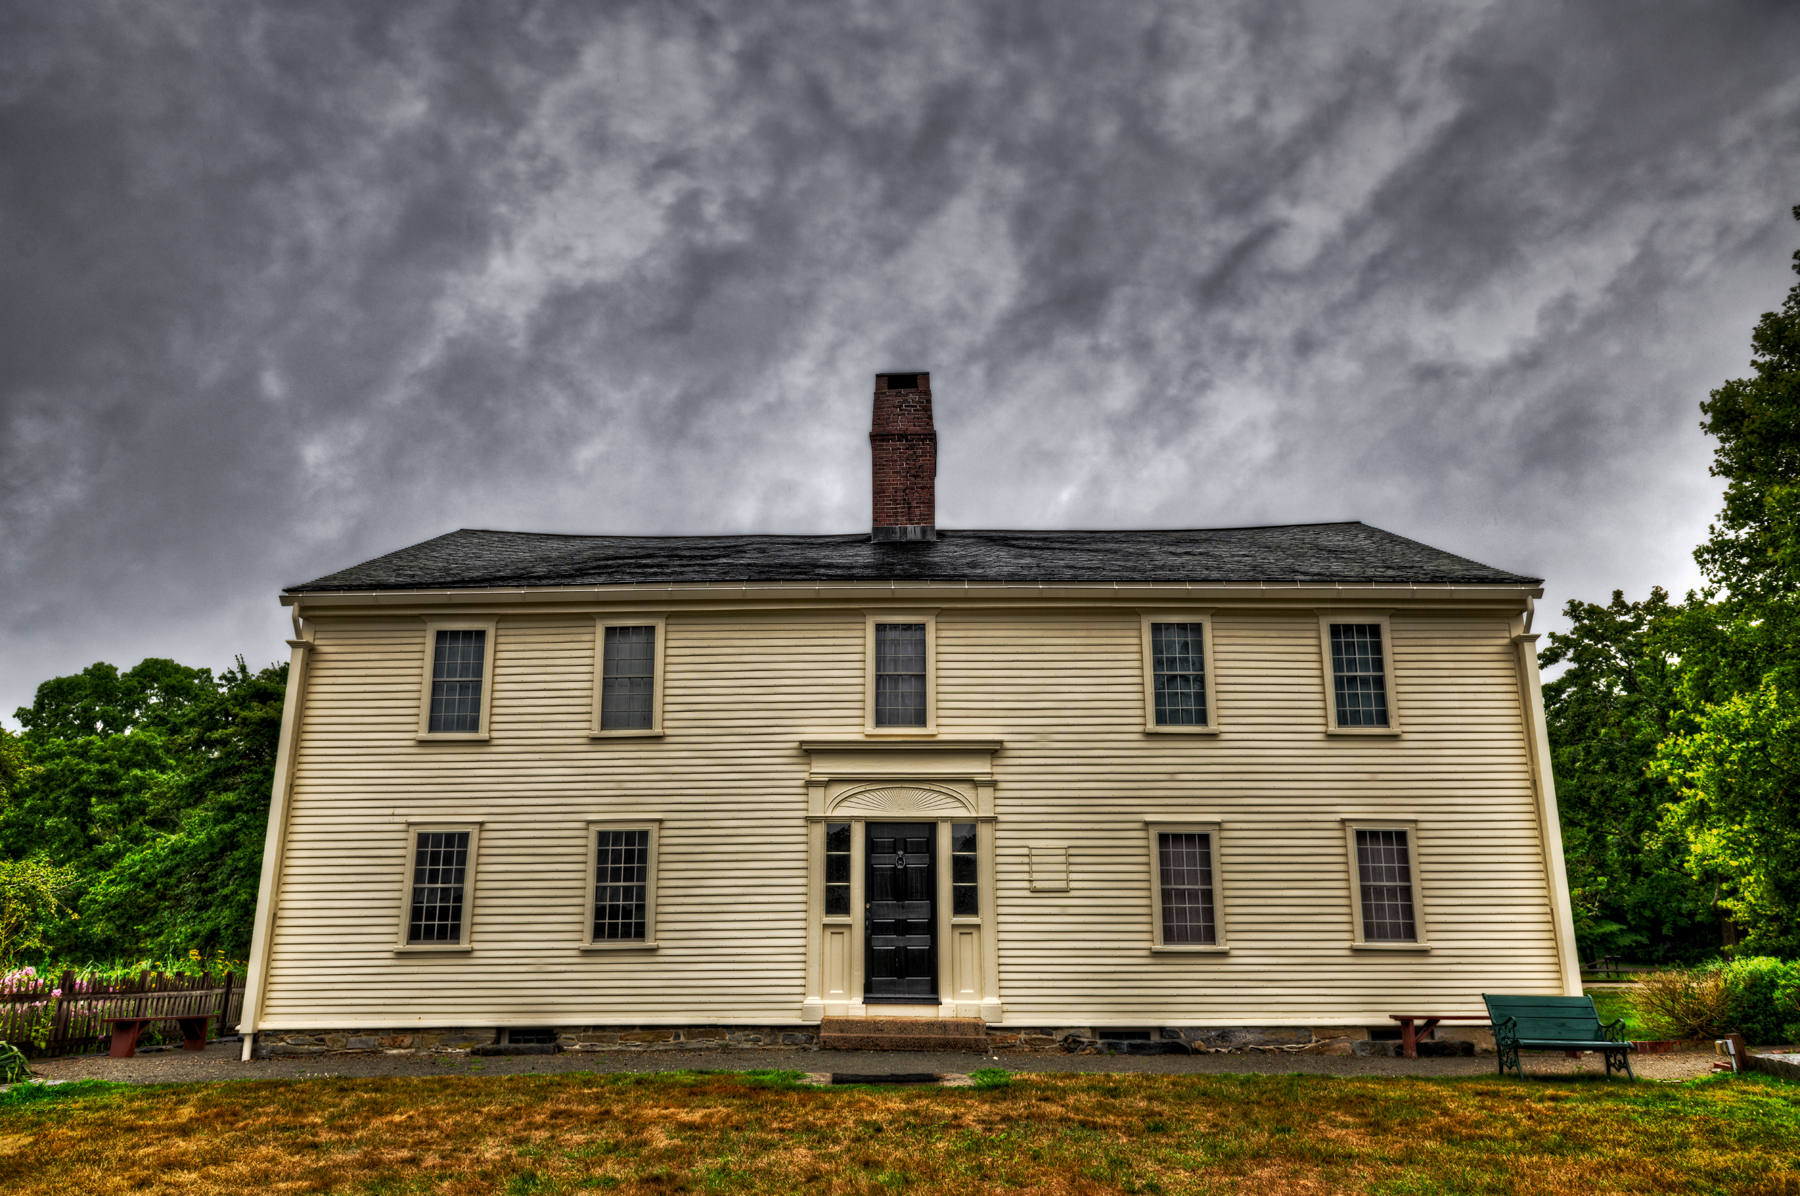 Smith's Castle in Wickford, Rhode Island. Photo by Frank Grace.